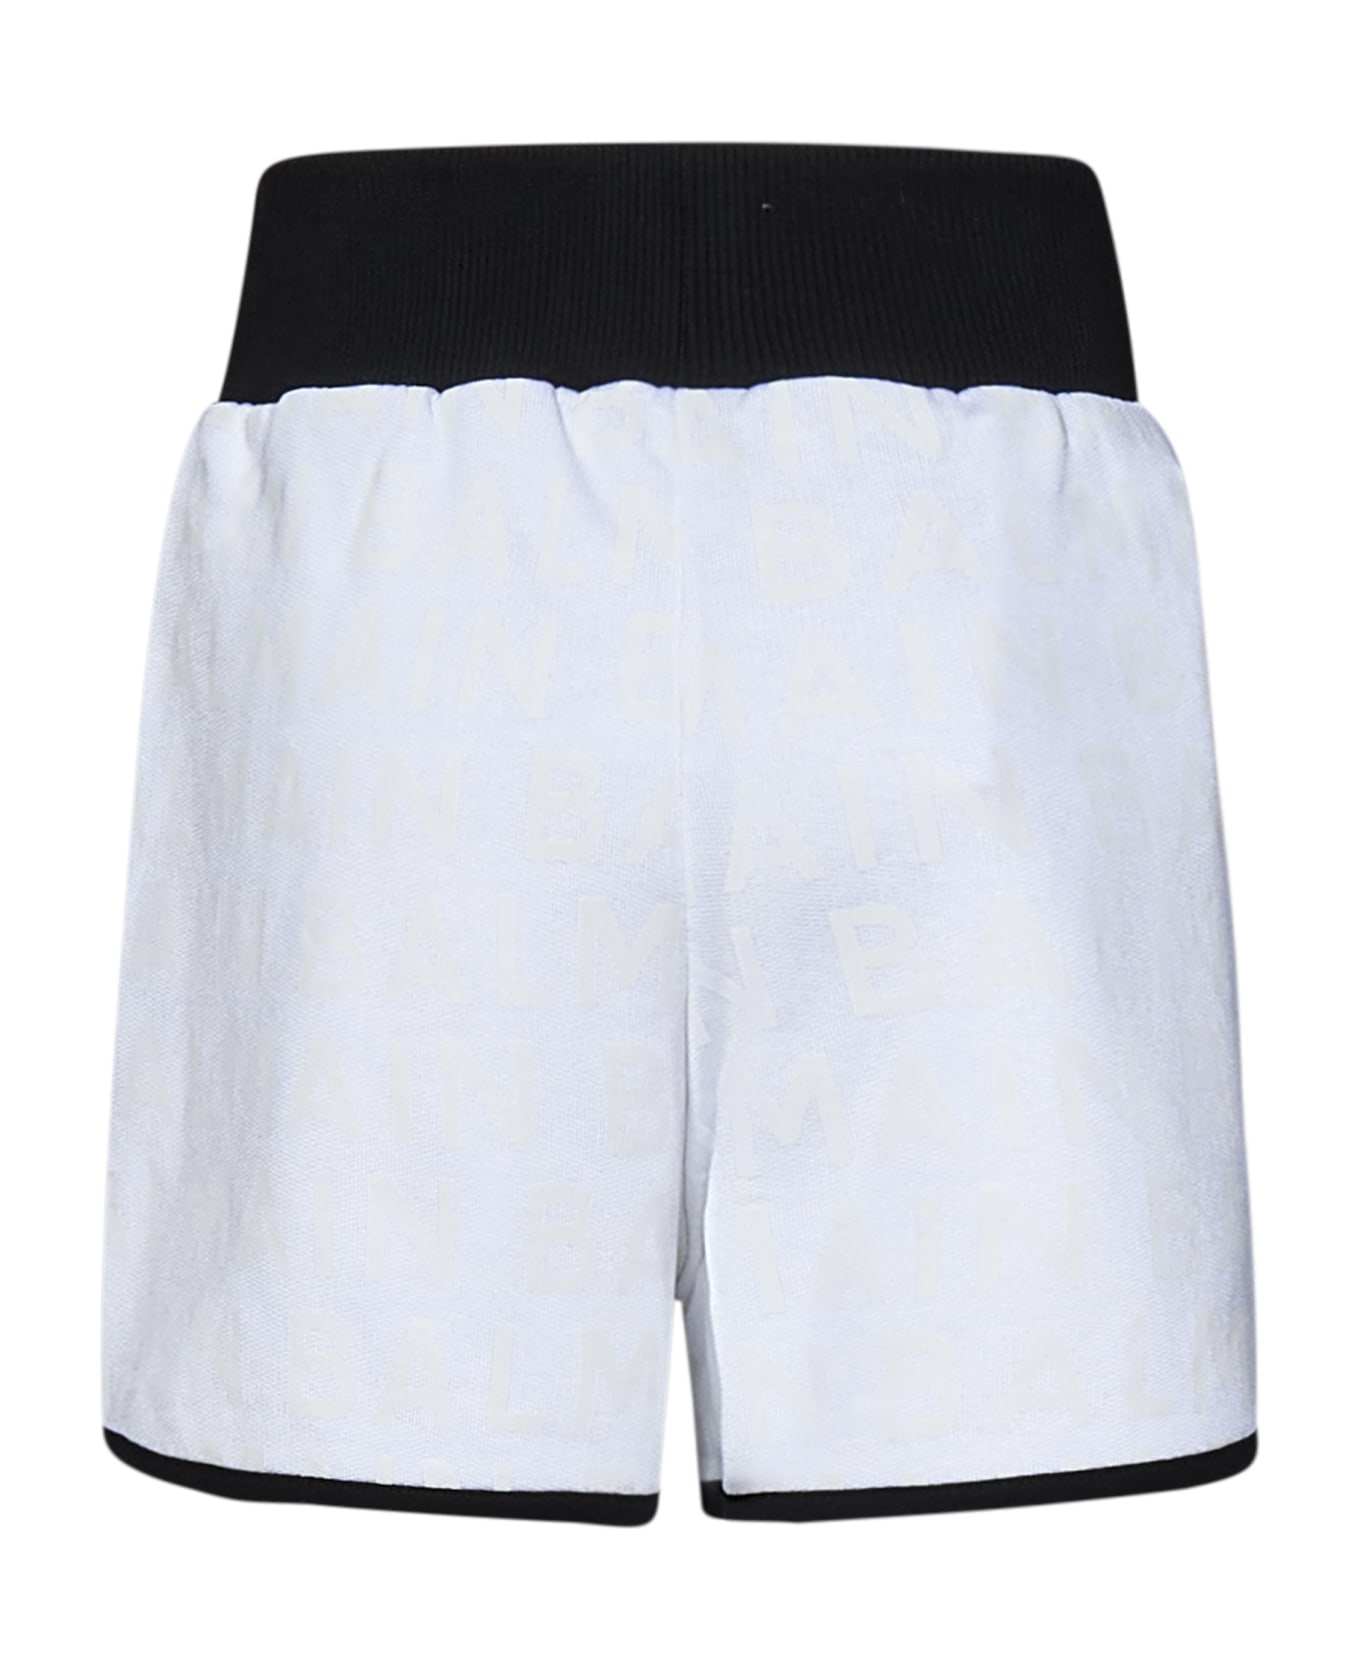 Balmain Shorts - White